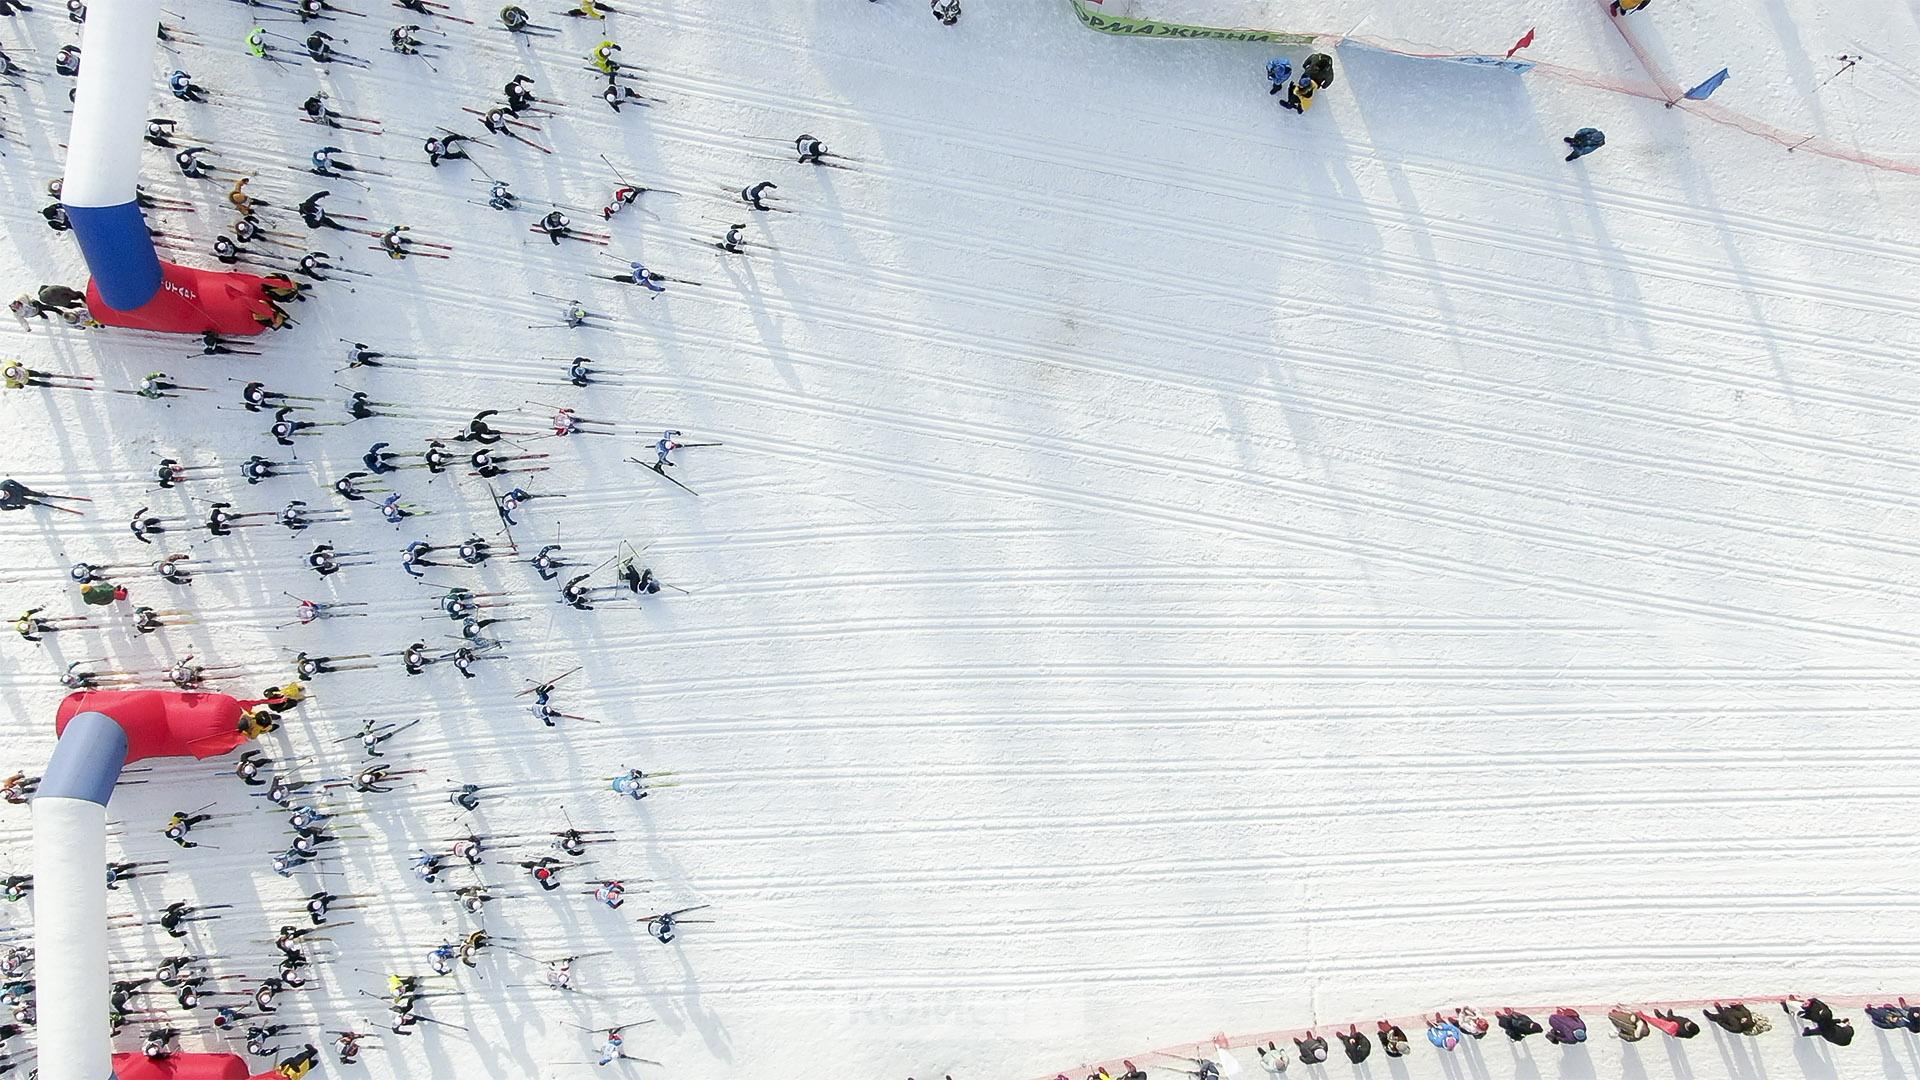 Почти 2 тысячи человек приняли участие в «Лыжне России» на Снежинке